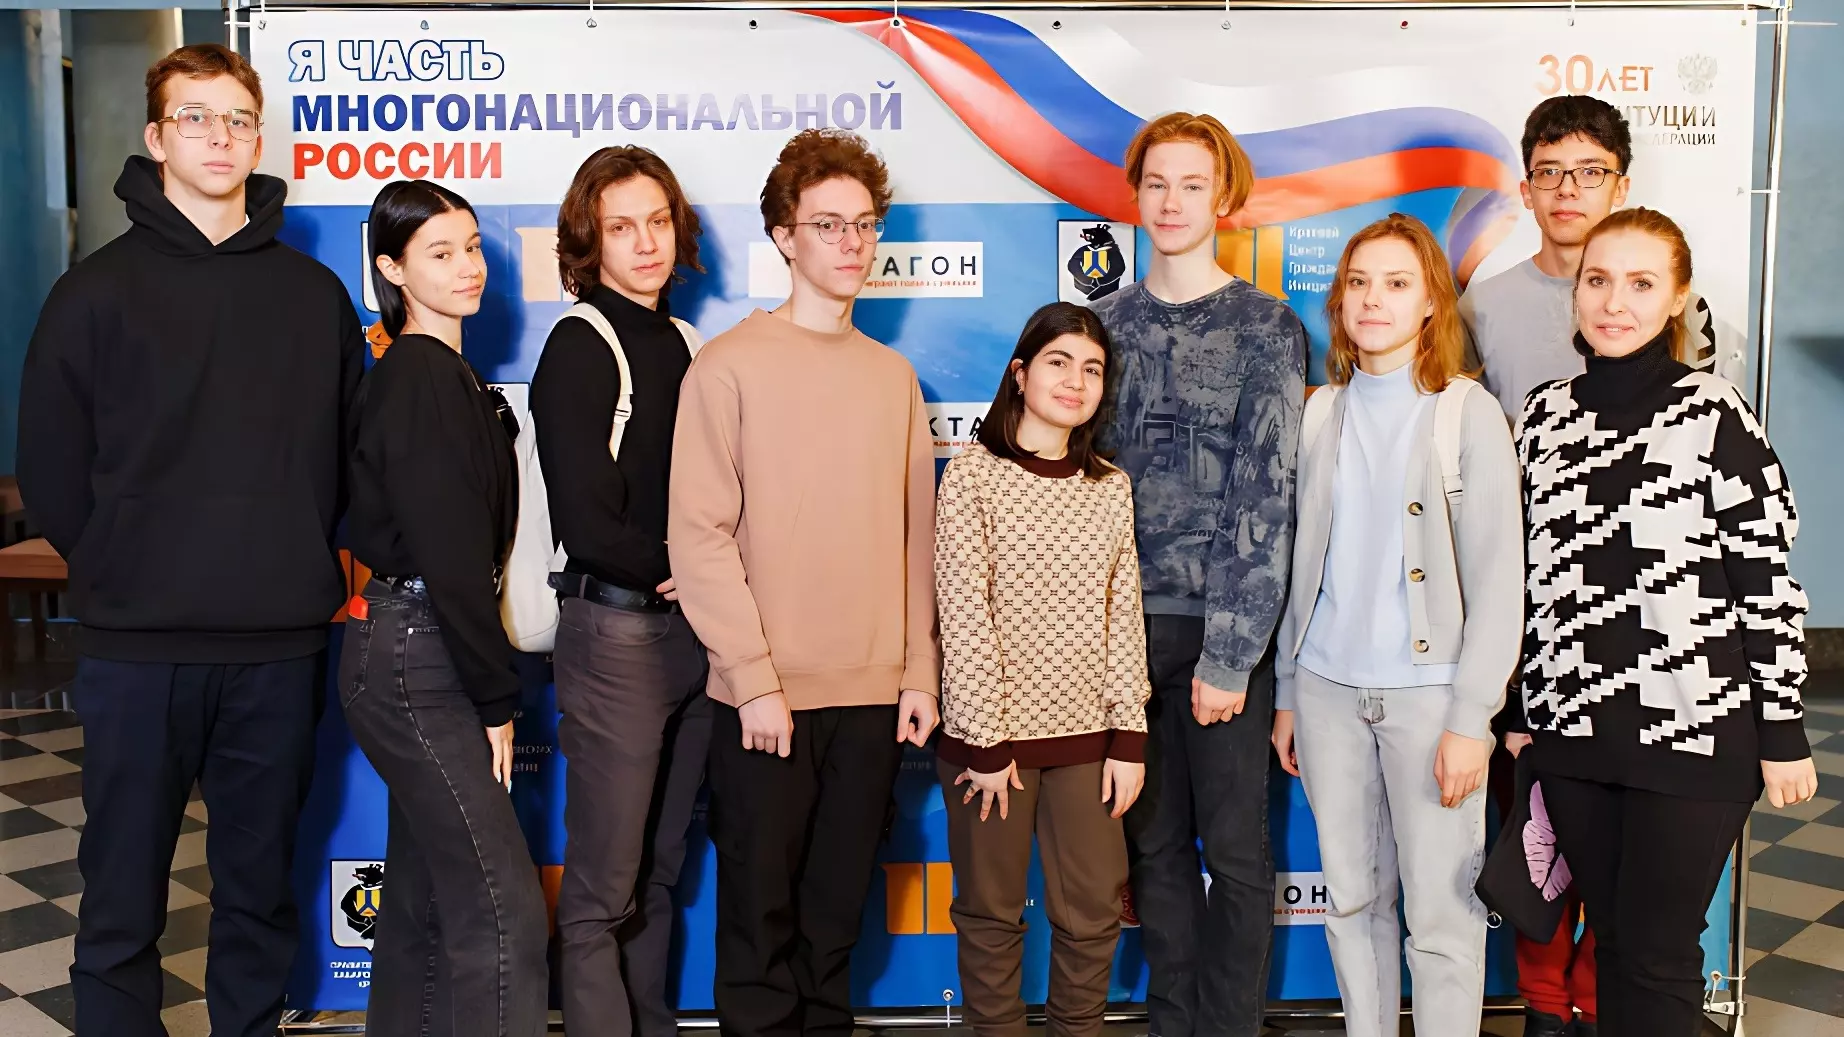 Частью многонациональной России почуствовали себя школьники в Хабаровске